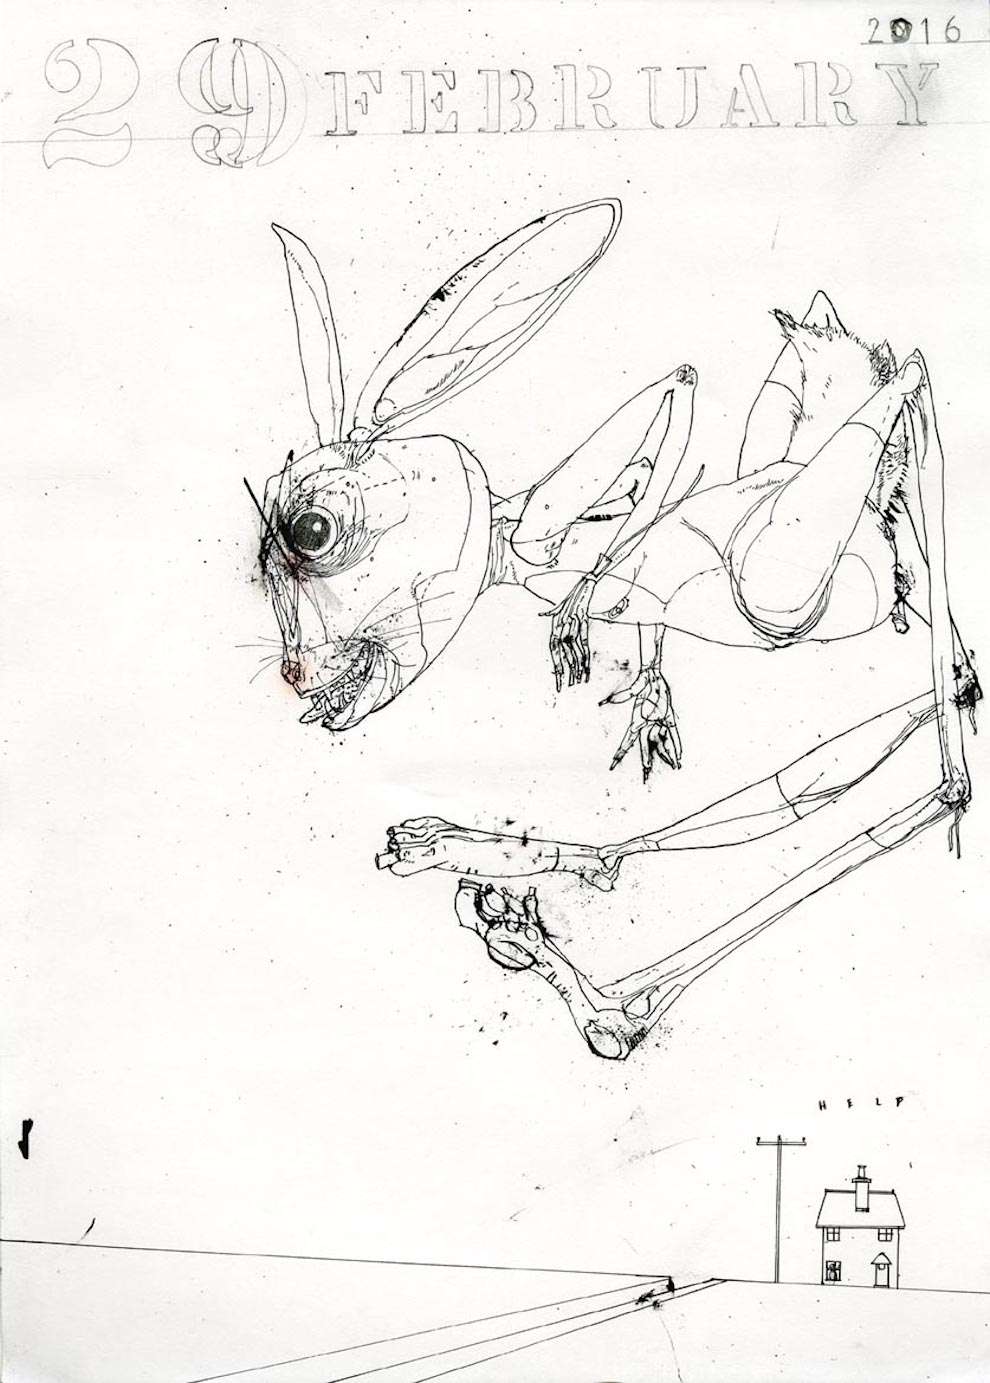 David Hughes, Line art illustration of a evil looking rabbit